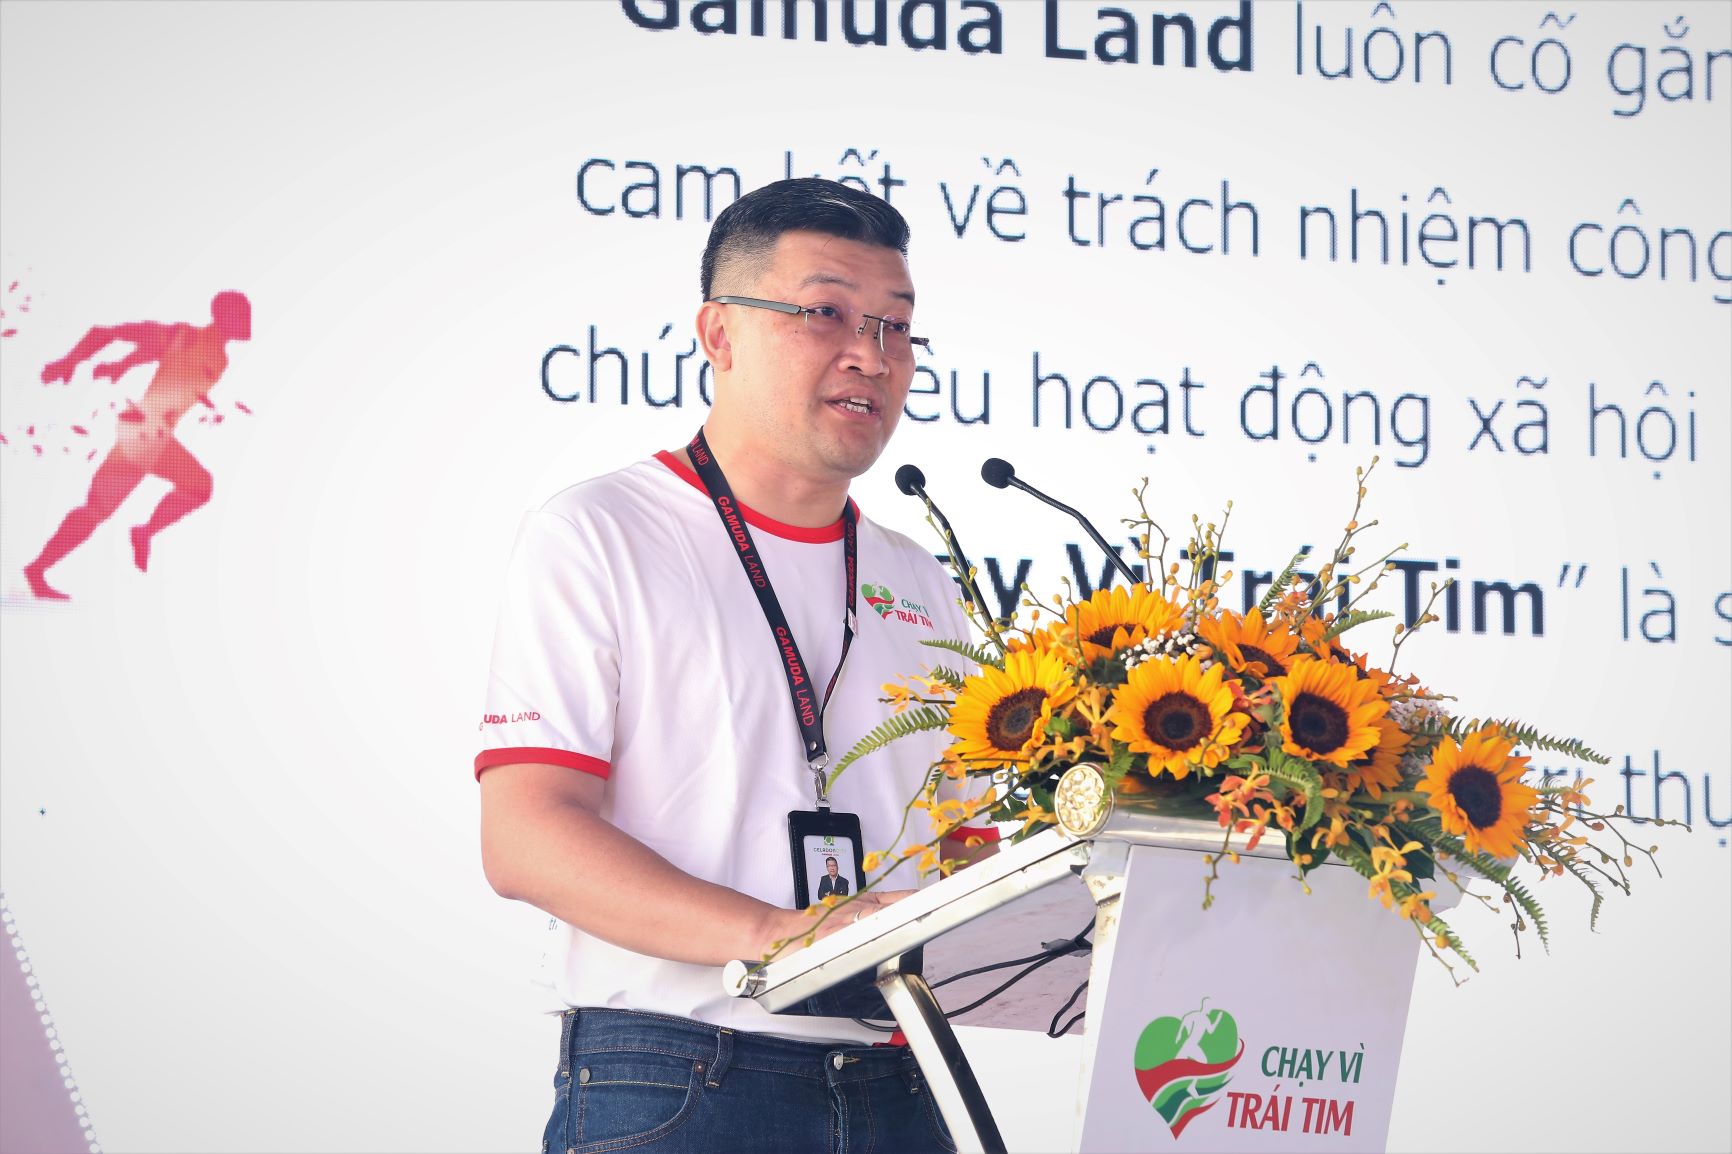 Ông Wyeren Yap Vooi Soon - Tổng giám đốc Gamuda Land TP.HCM phát biểu khai mạc chương trình